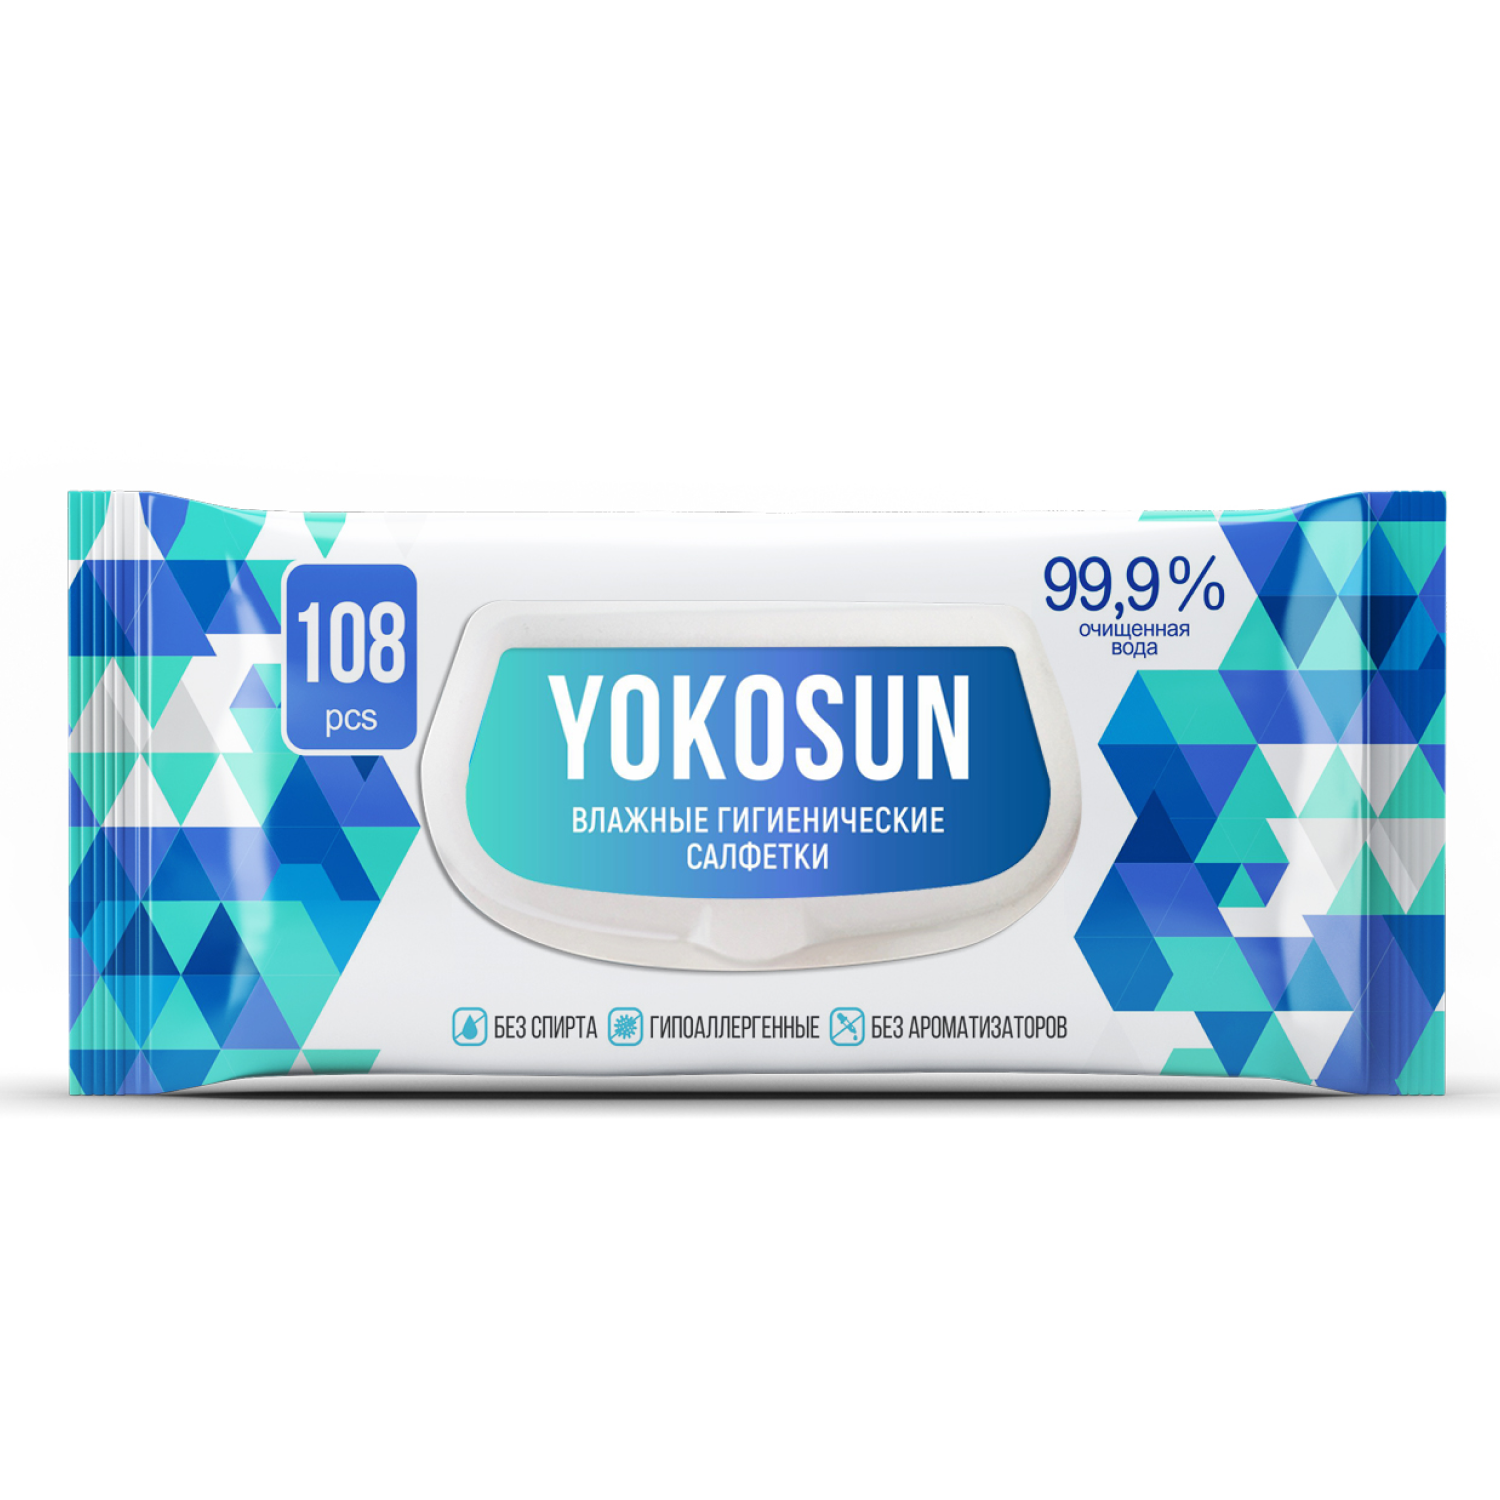 Антибактериальные влажные гигиенические салфетки YokoSun, 108 шт yokosun влажные гигиенические салфетки детские eco 100 0